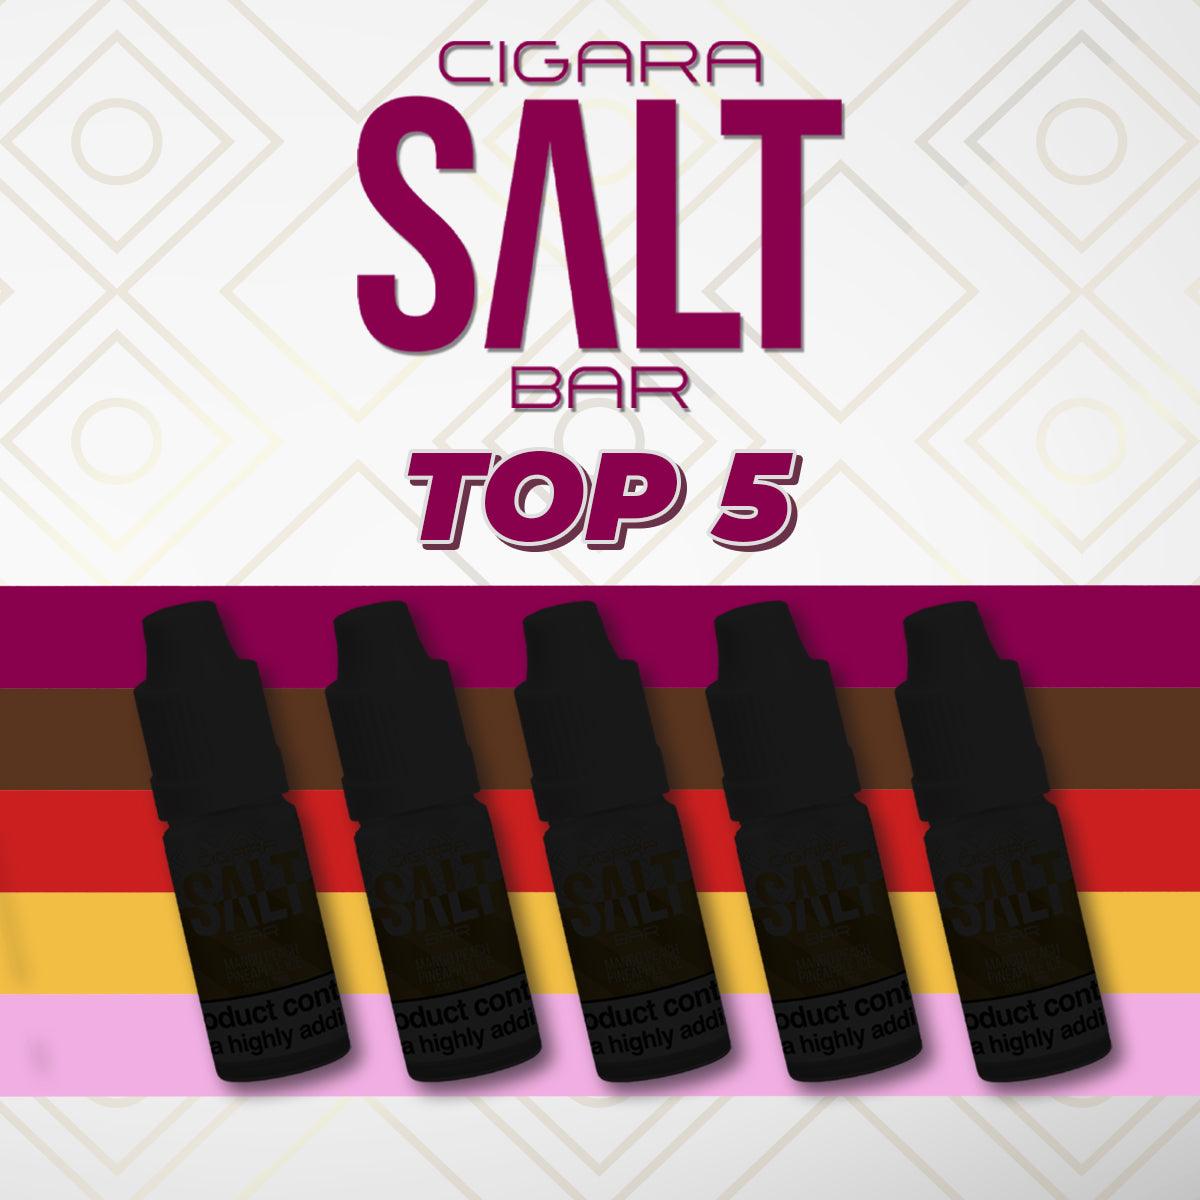 Top 5 Cigara Salt Bar Nic Salts